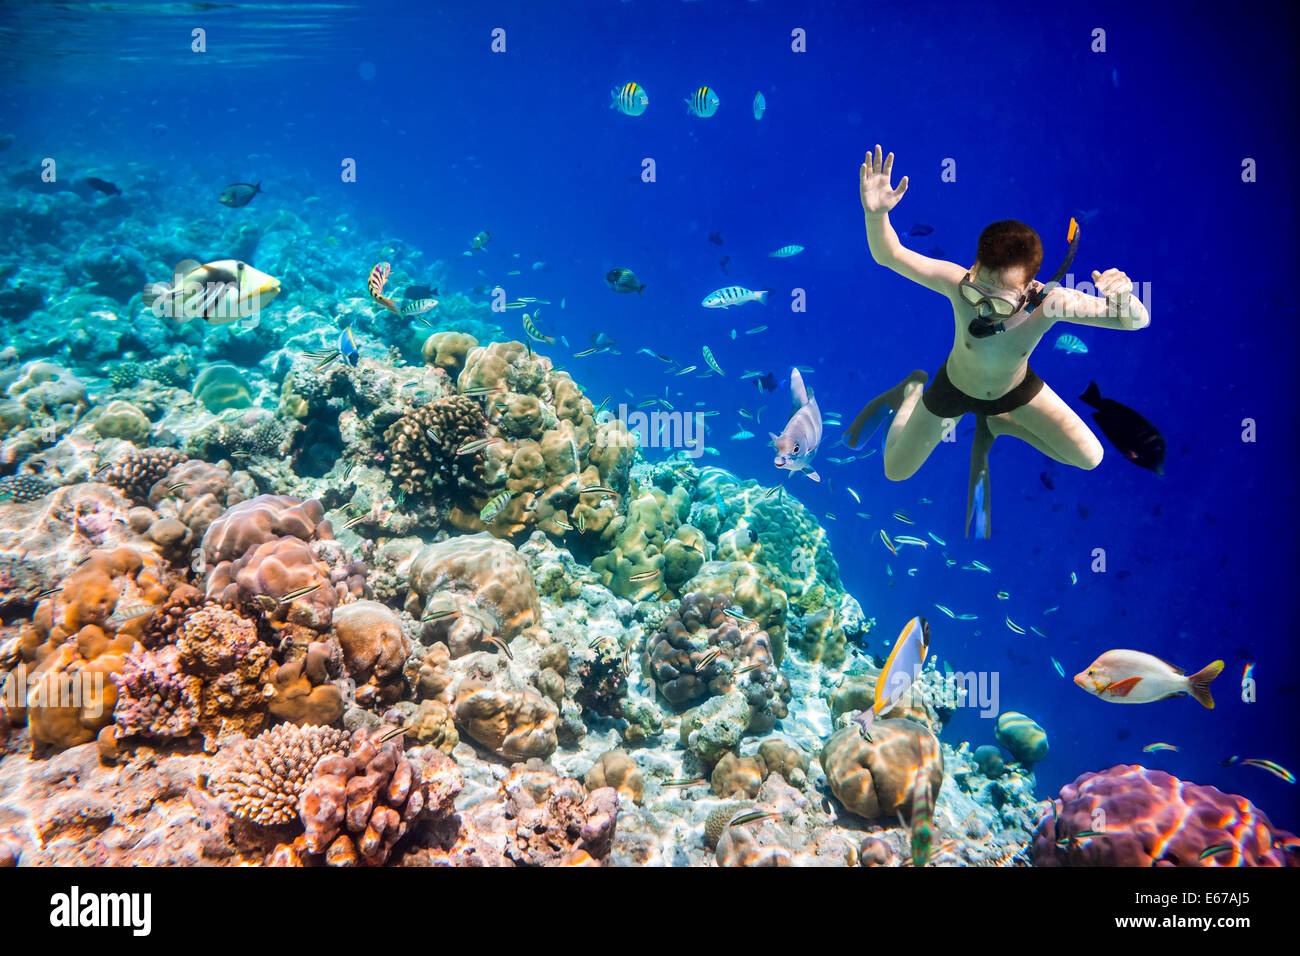 Snorkeler diving le long de la barrière de cerveau. Les récifs coralliens de l'océan Indien aux Maldives. Banque D'Images